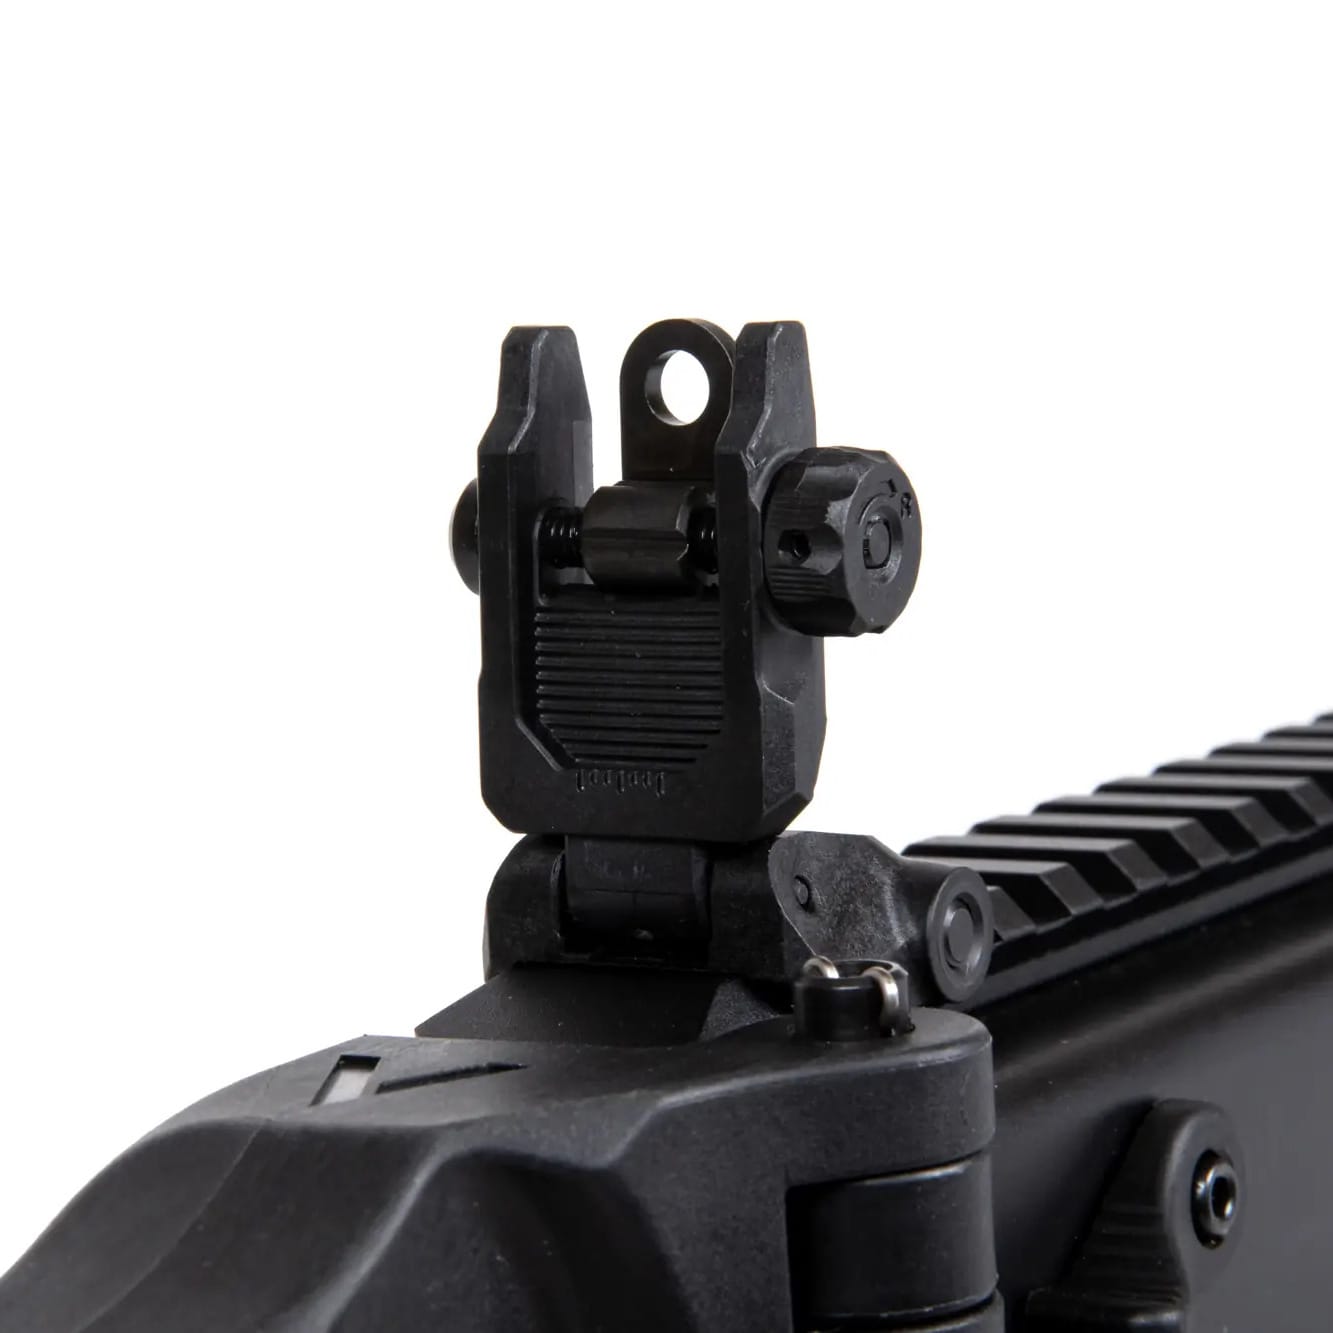 Пістолет-кулемет AEG KRISS Vector з глушником - Black